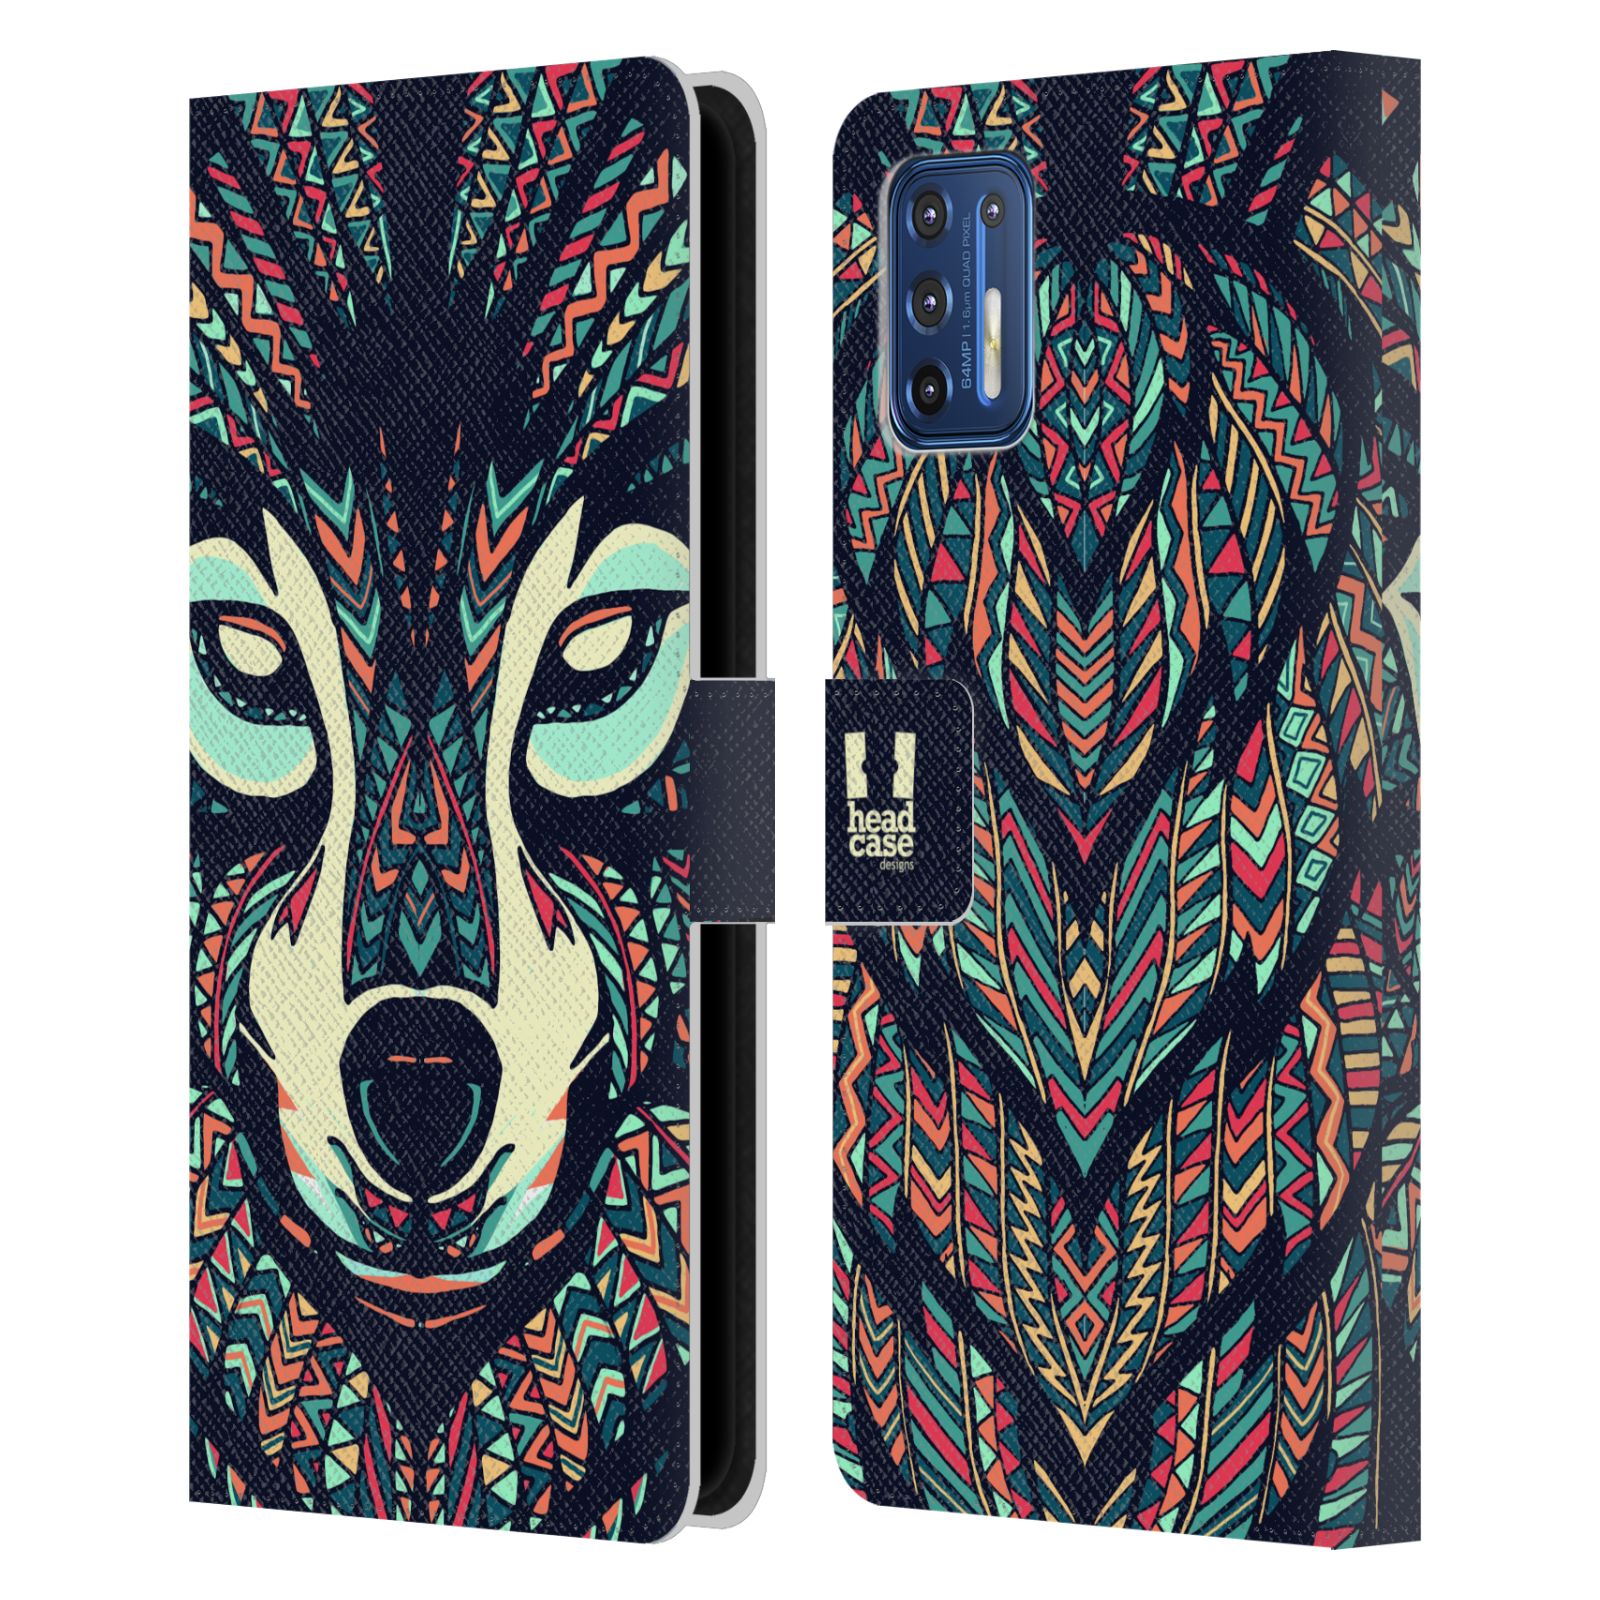 Pouzdro pro mobil Motorola Moto G9 PLUS - HEAD CASE - Aztécký motiv vlk